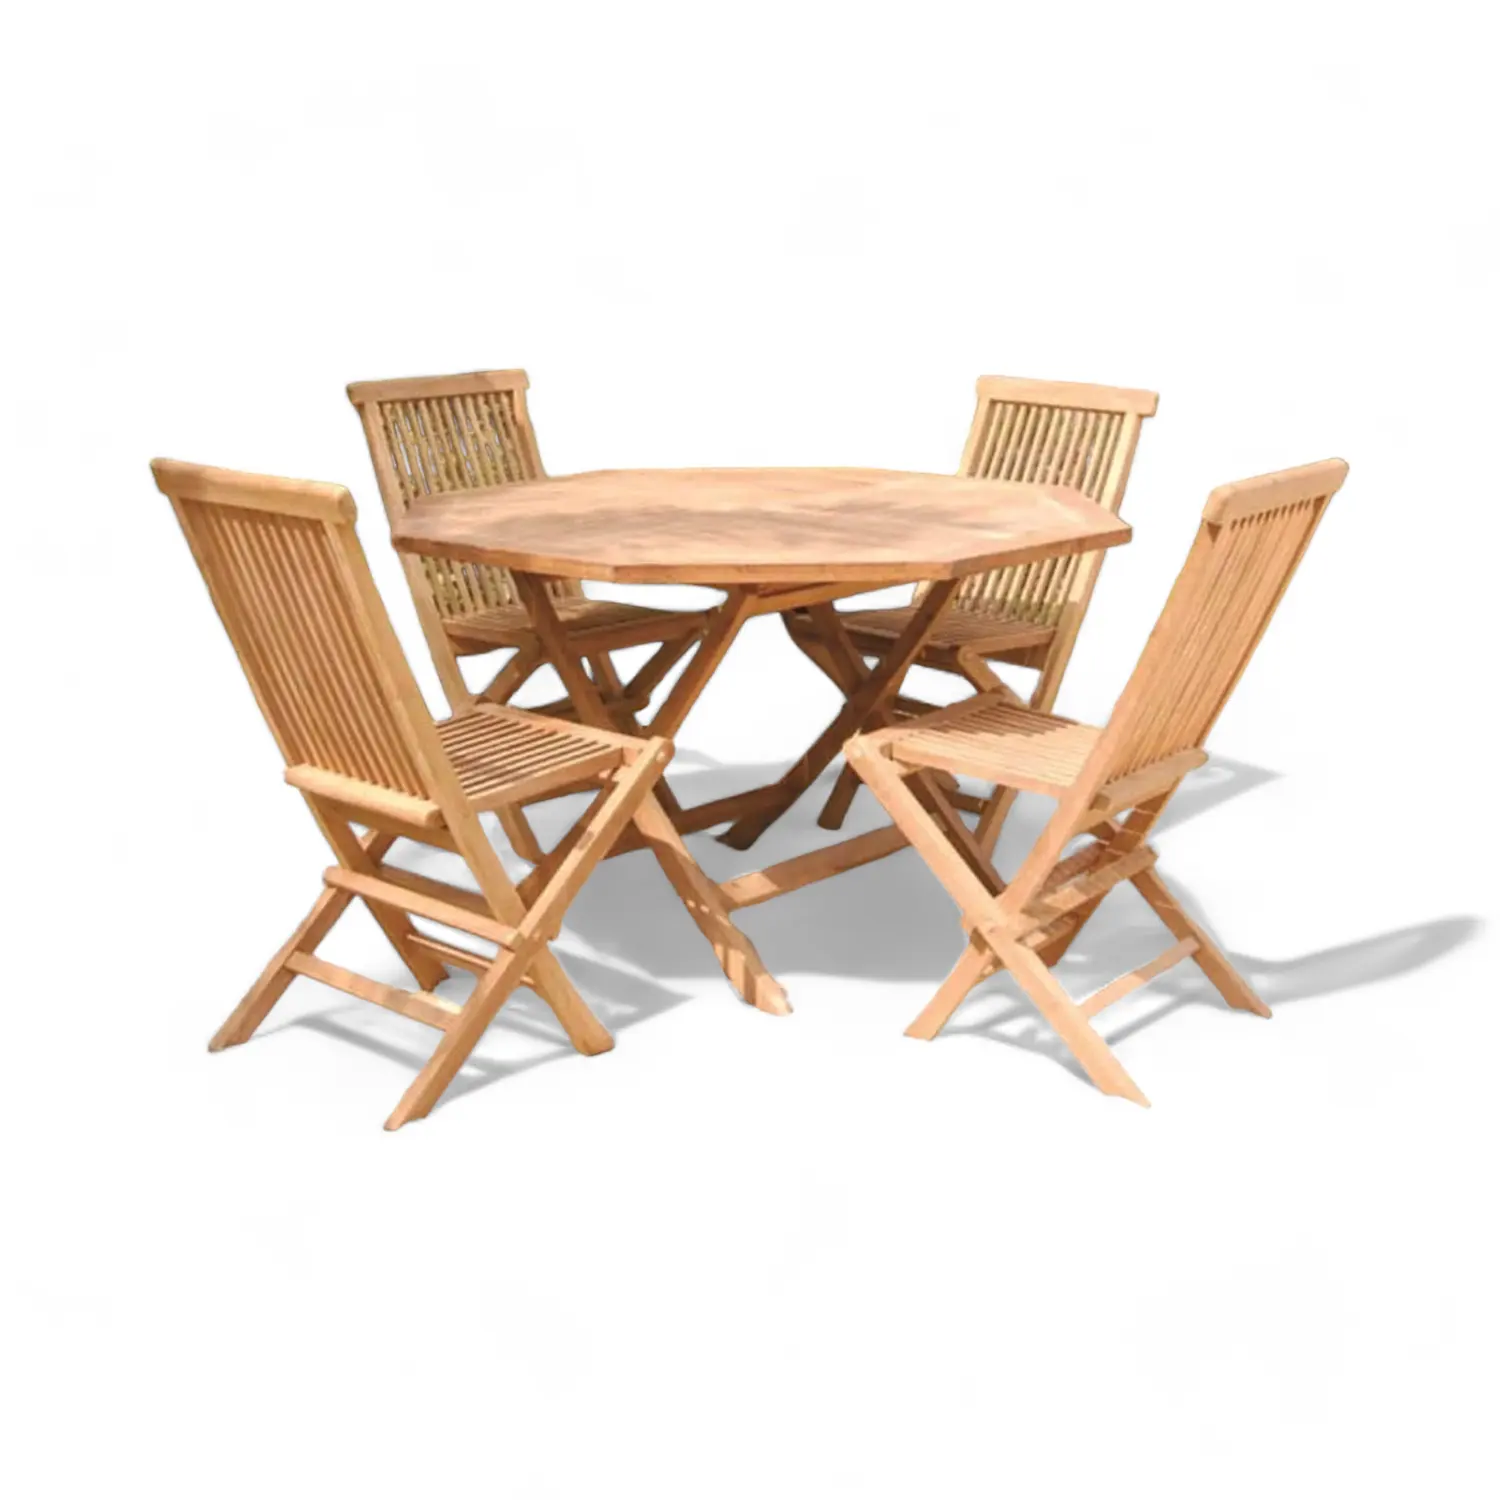 チーク材のガーデンテーブルと折りたたみ式デザインの椅子セット無垢材の丸いダイニングテーブルセットガーデン家具用の椅子4脚